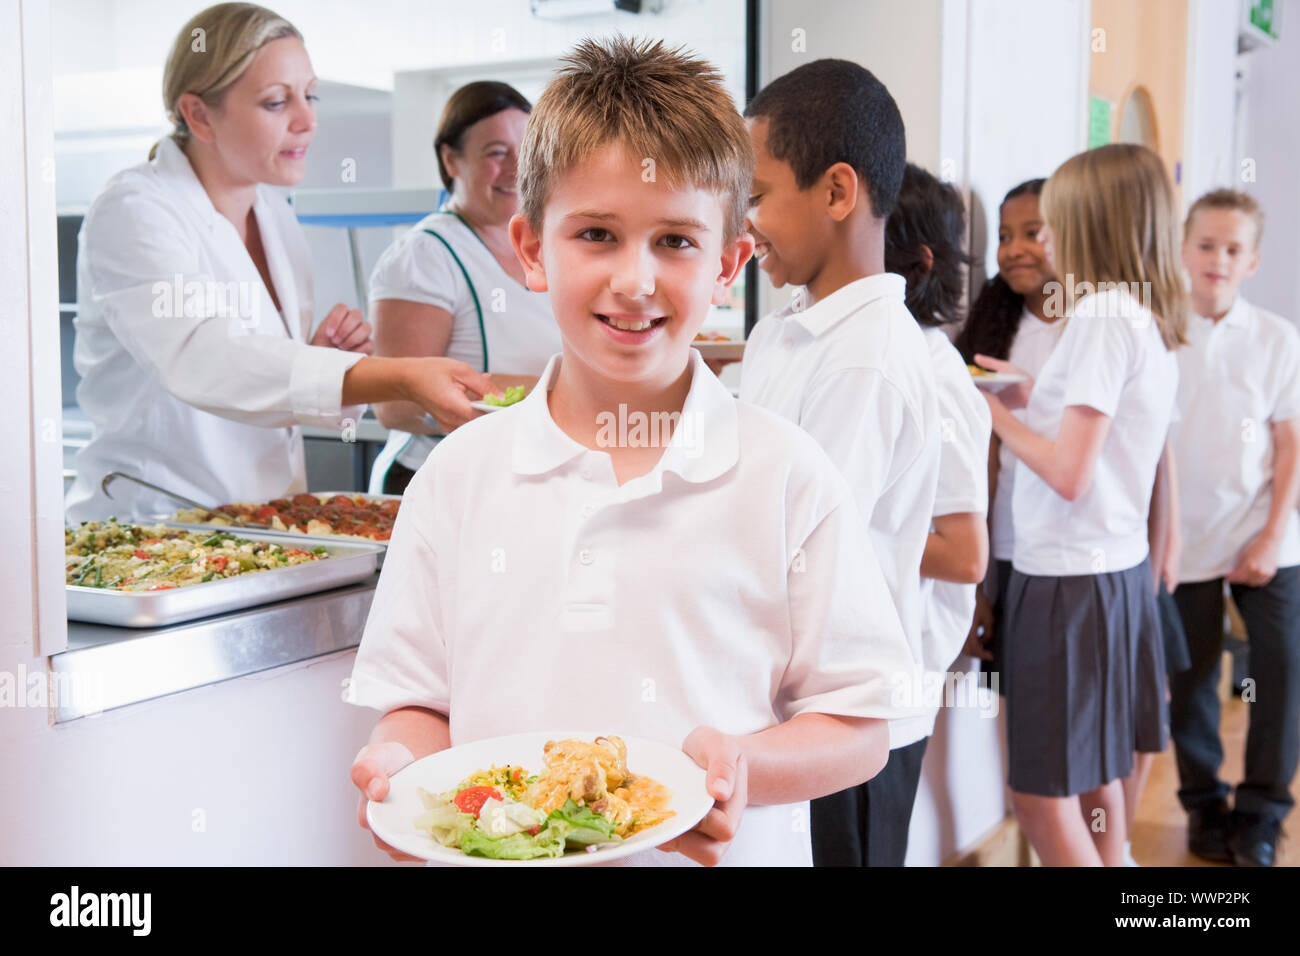 Schüler in der Cafeteria Schlange mit einem hält seine gesunde Mahlzeit und Blick in die Kamera (Schärfentiefe) Stockfoto